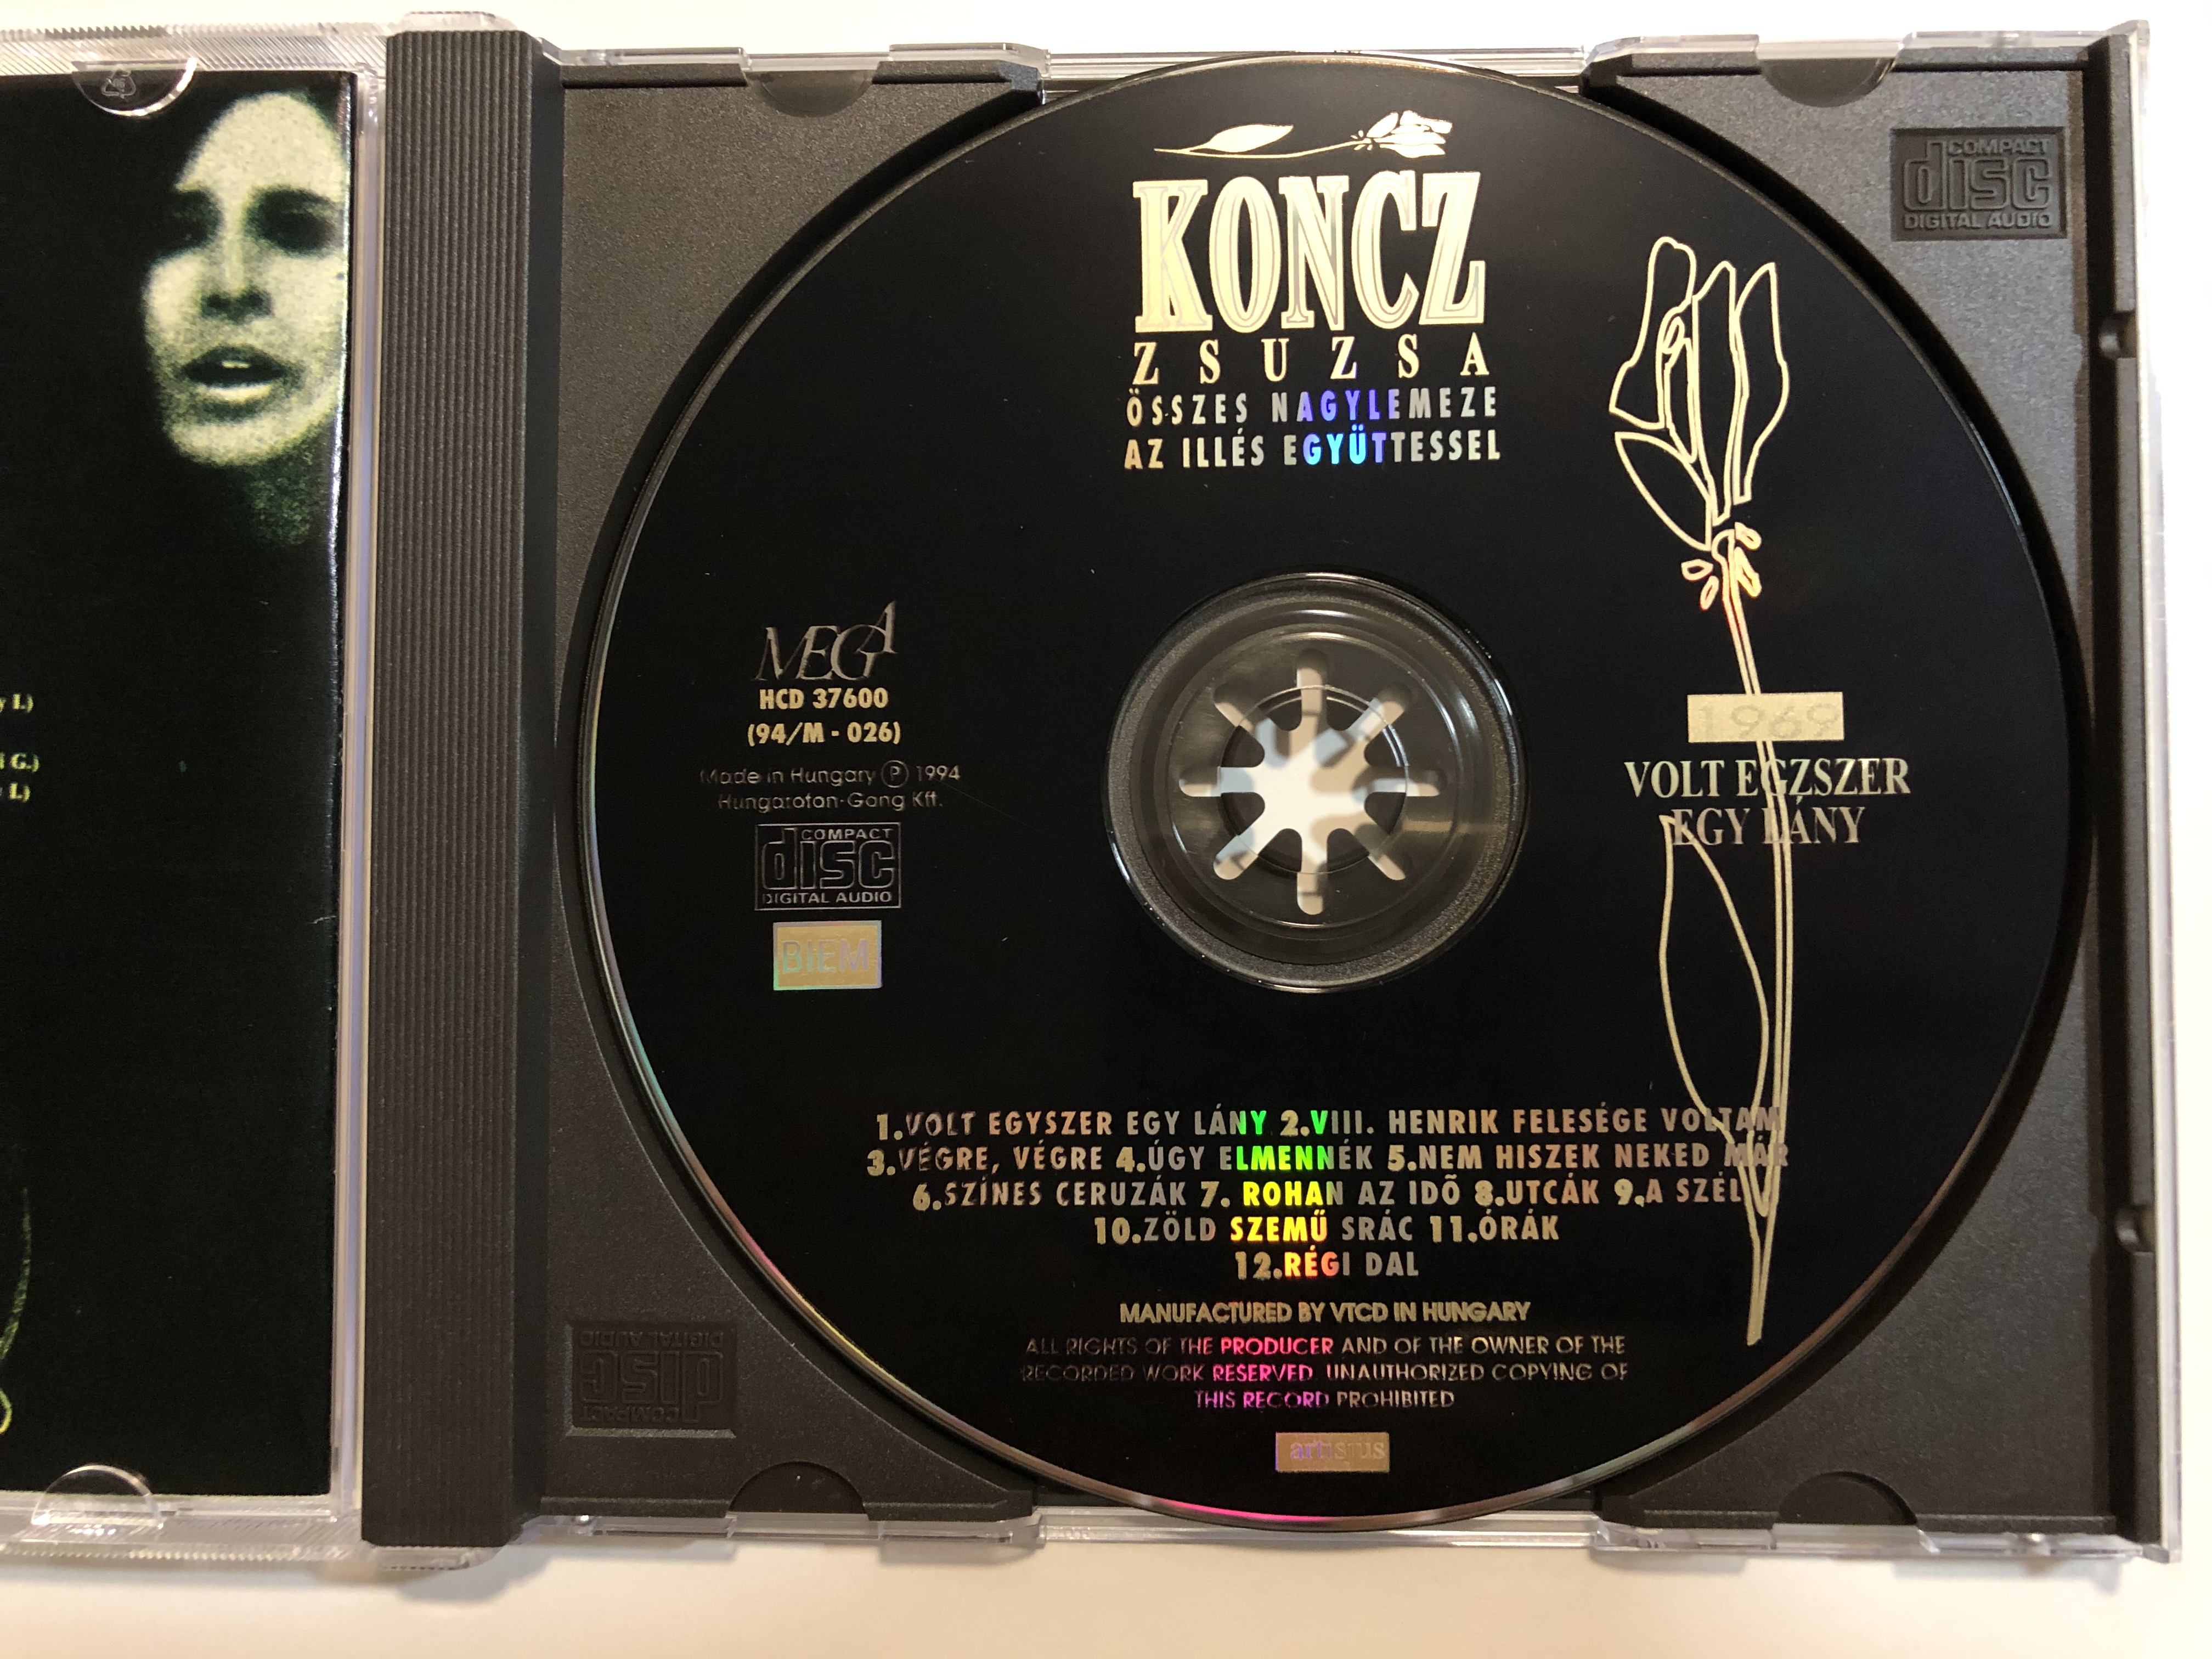 koncz-zsuzsa-...volt-egyszer-egy-l-ny-mega-audio-cd-1994-hcd-37600-94m-026-4-.jpg